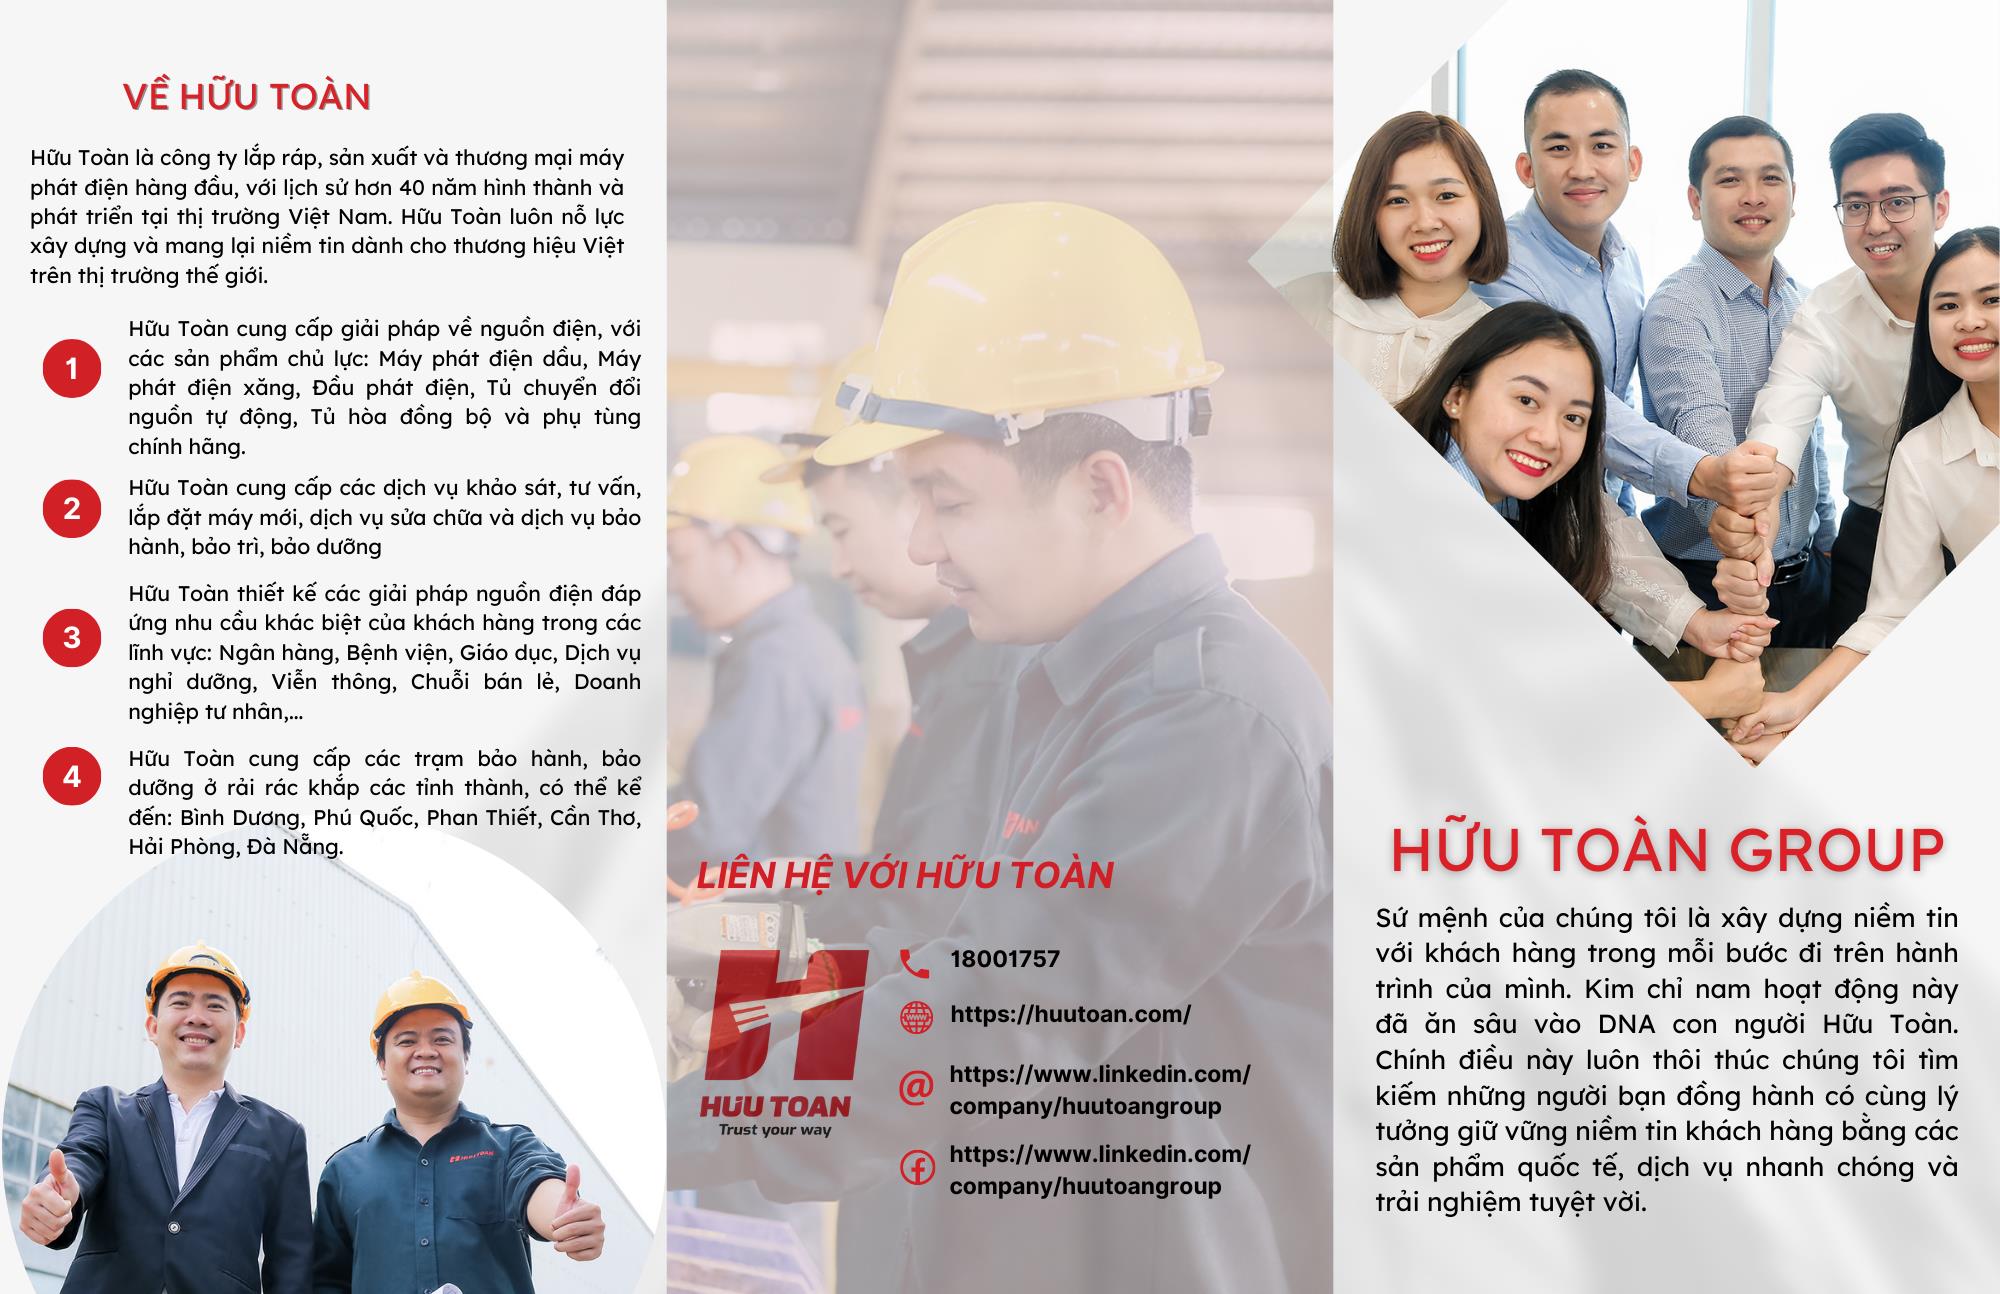 Thông báo tiếp nhận CV ứng tuyển phỏng vấn của Công ty TNHH Hữu Toàn Group (Gửi CV có quà tặng)